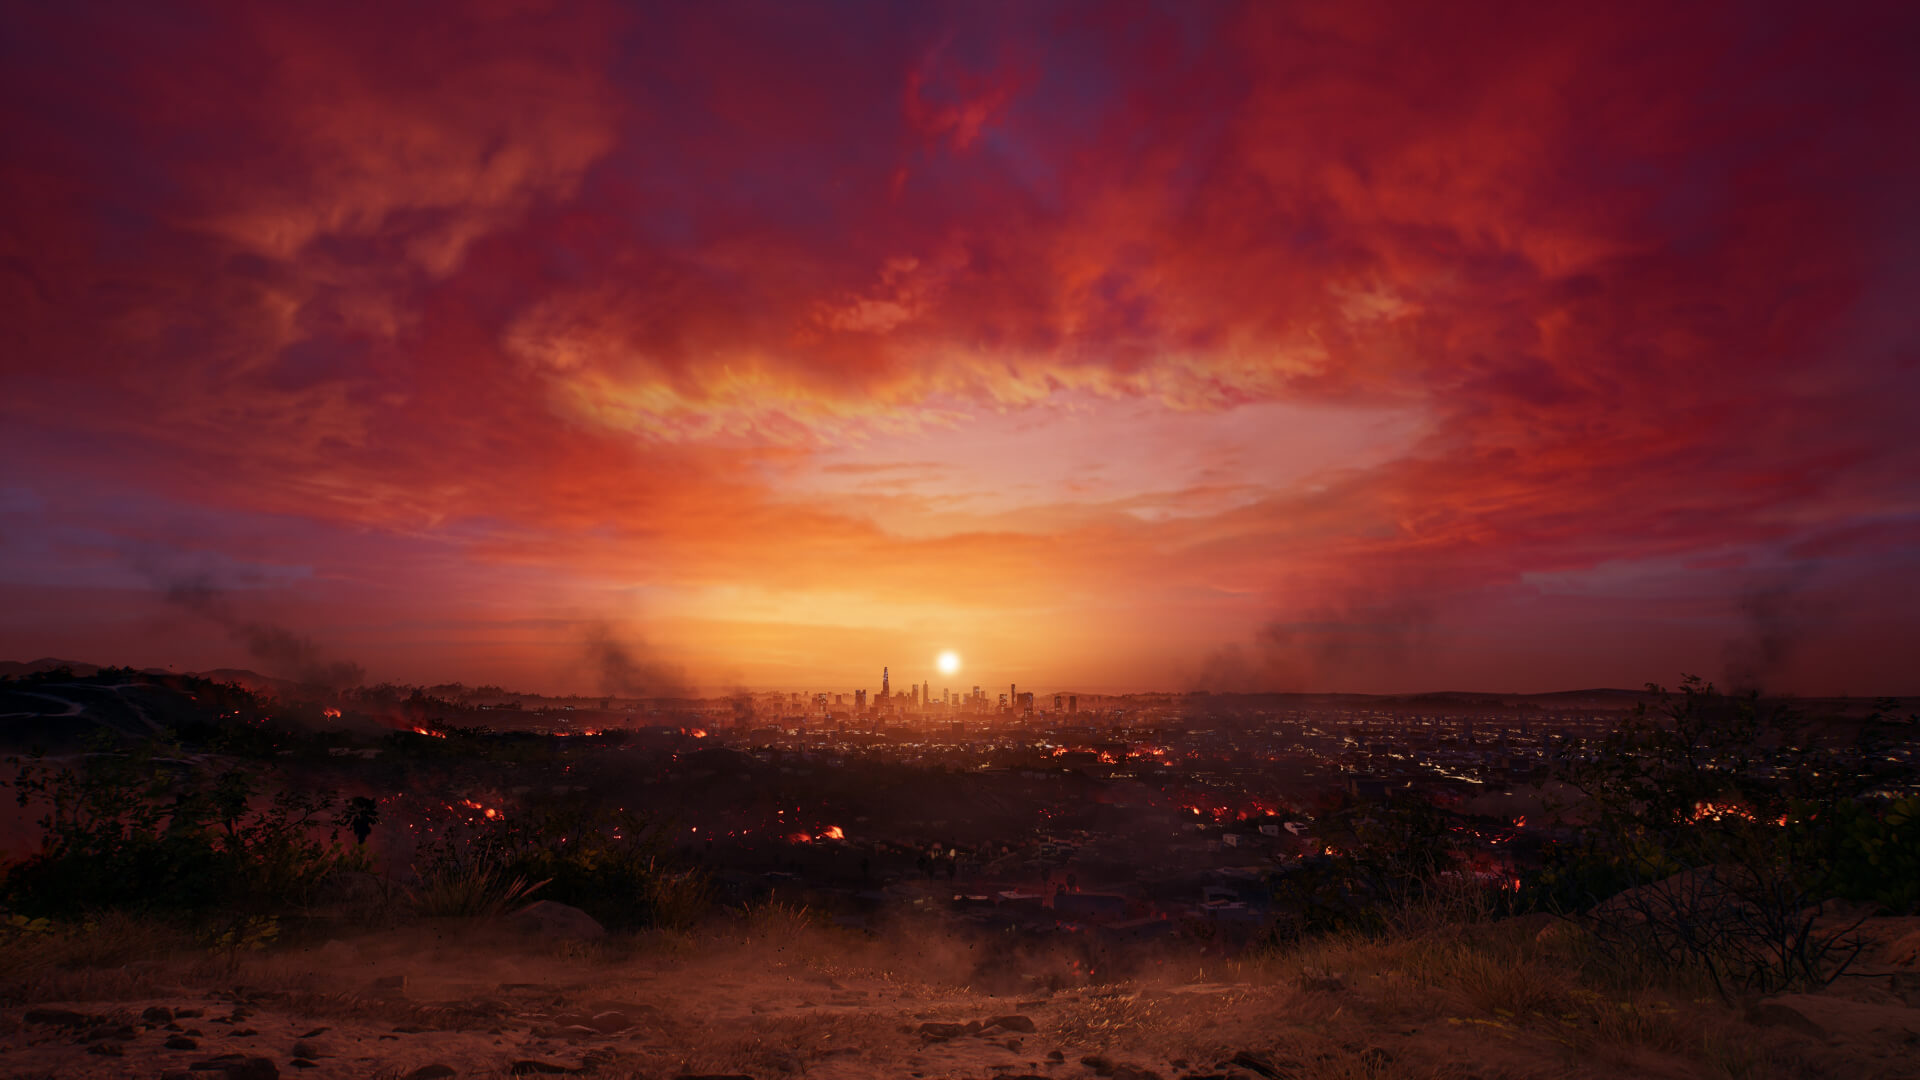 《死亡岛2 Dead Island 2》中文版百度云迅雷下载